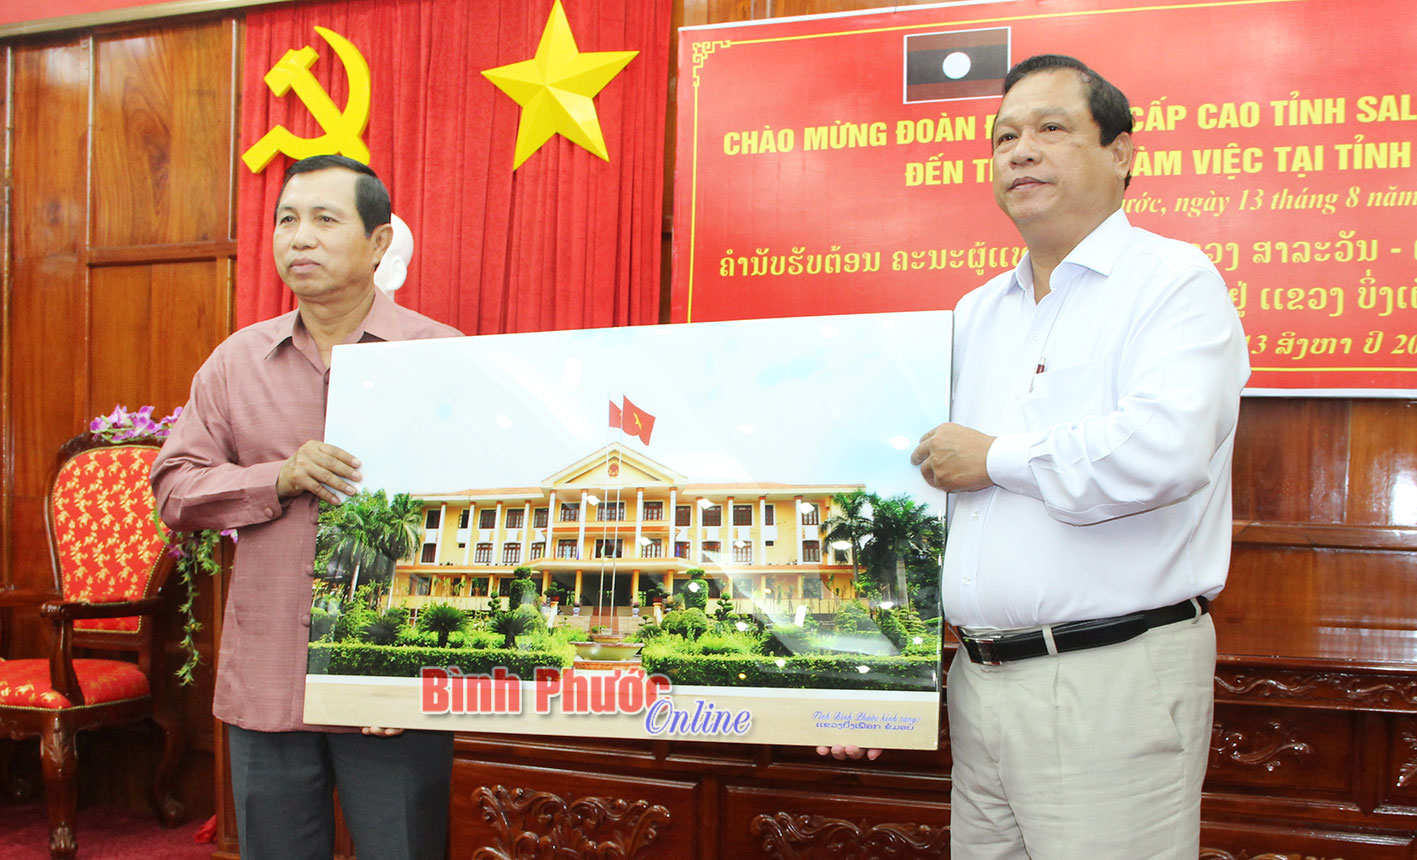 Đồng chí Nguyễn Văn Trăm, Phó bí thư Tỉnh ủy, Chủ tịch UBND tỉnh Bình Phước tặng quà lưu niệm cho tỉnh Salavan